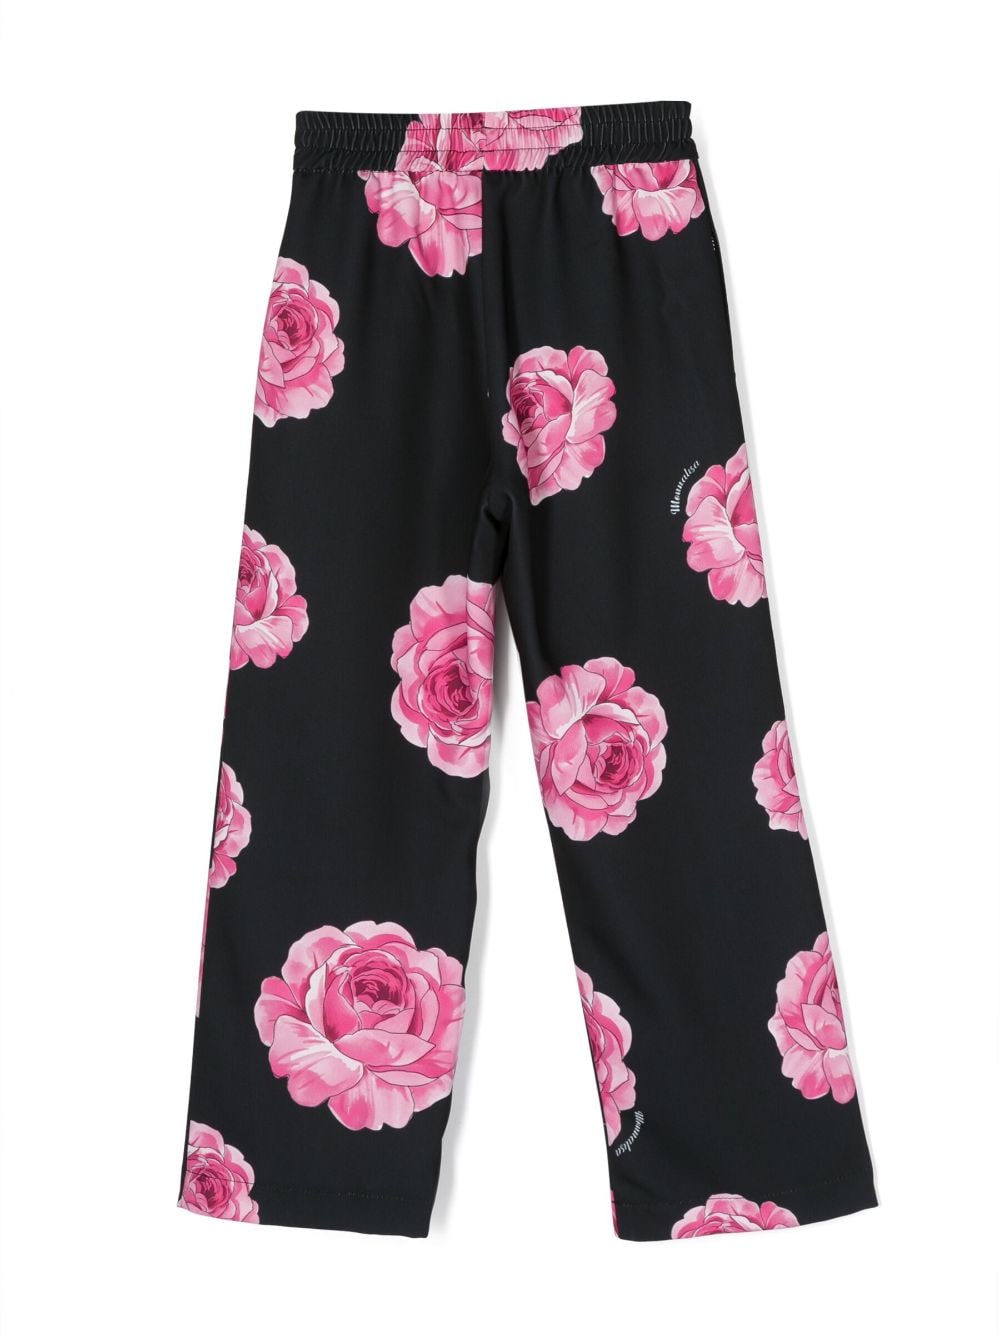 Pantalone nero per bambina con rose